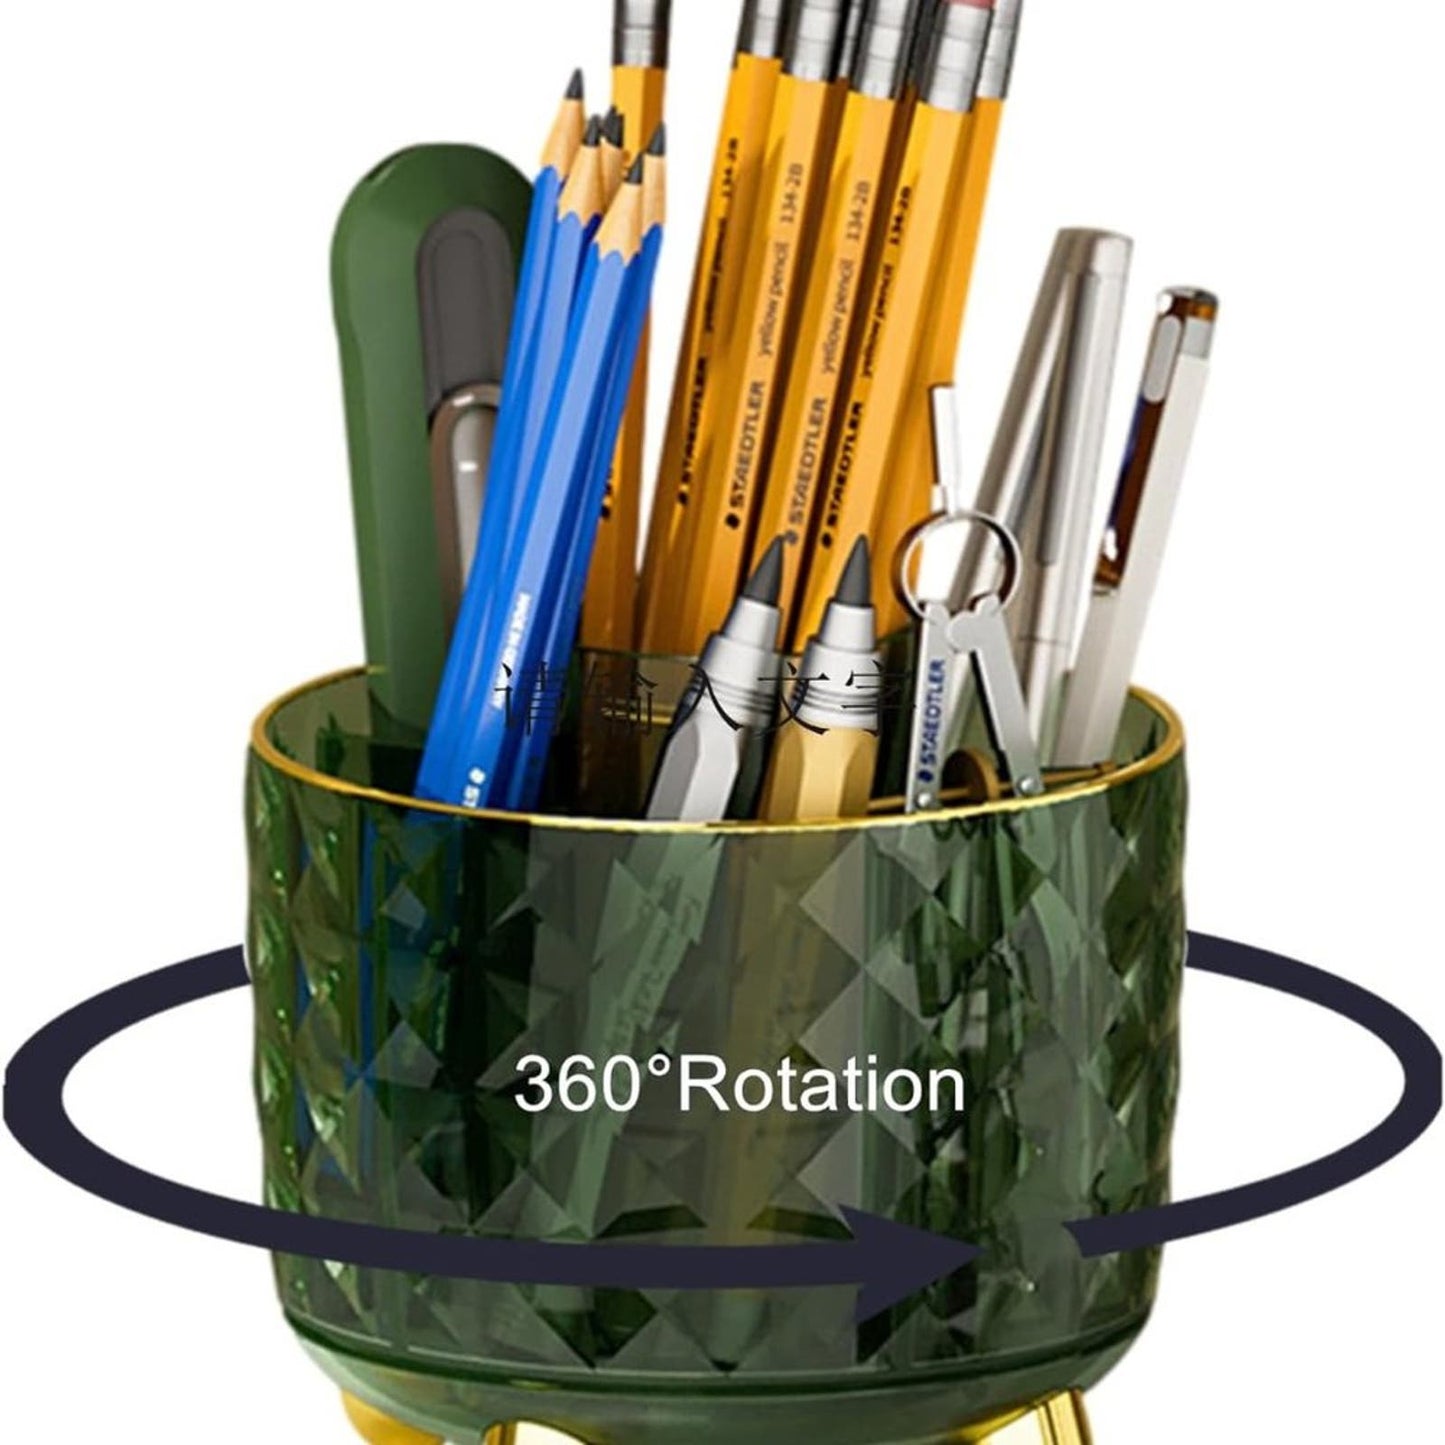 Laloblue Pencil Holder For Desk, Pen Holder, 6 Slots 360° Degree Rotating